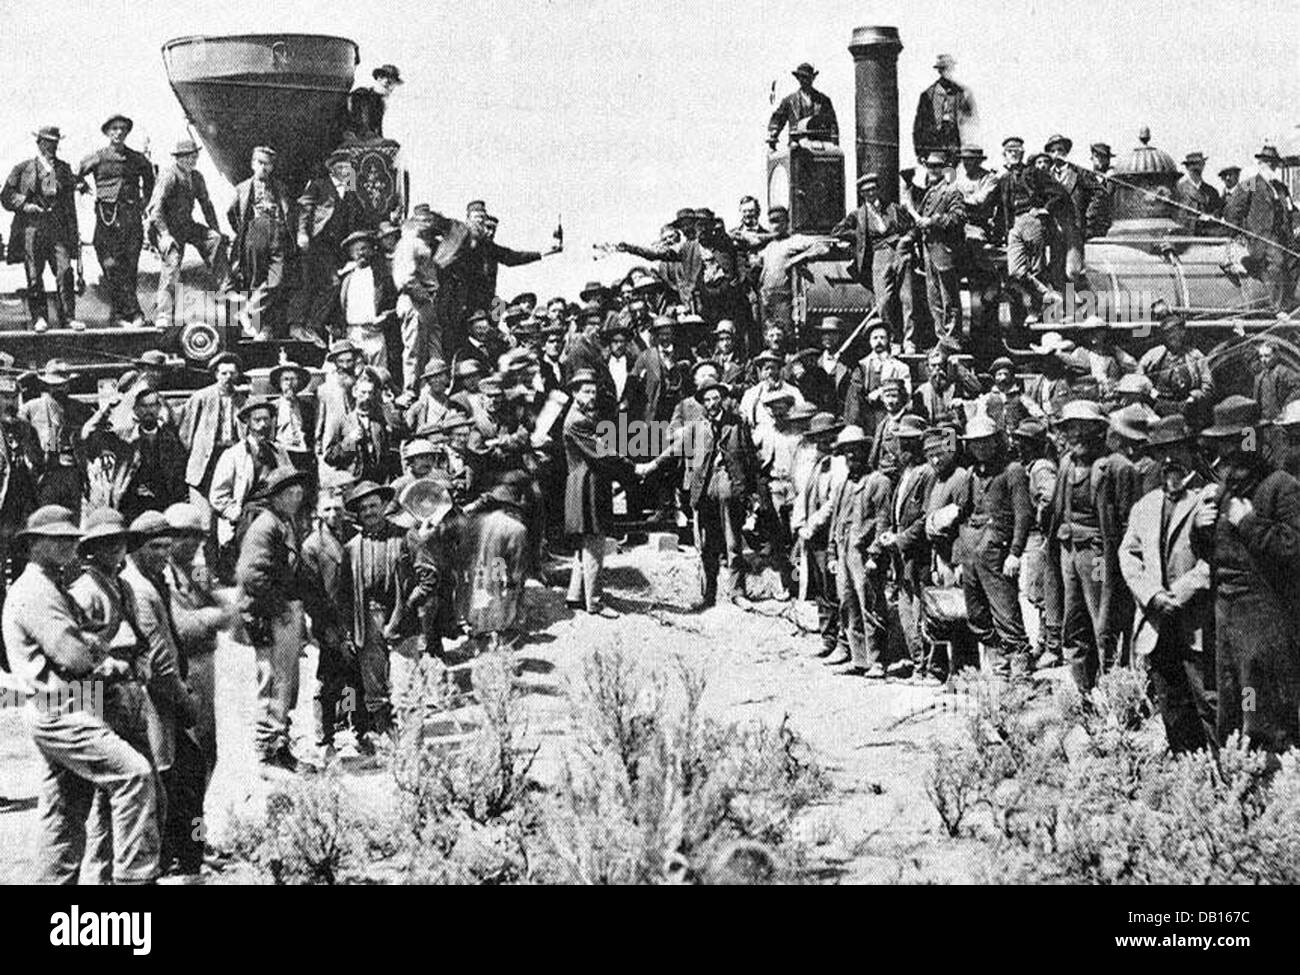 GOLDEN SPIKE bei der Central Pacific und der Union Pacific Railroad Linien Promontory Summit, Utah, 10. Mai 1869 Stockfoto